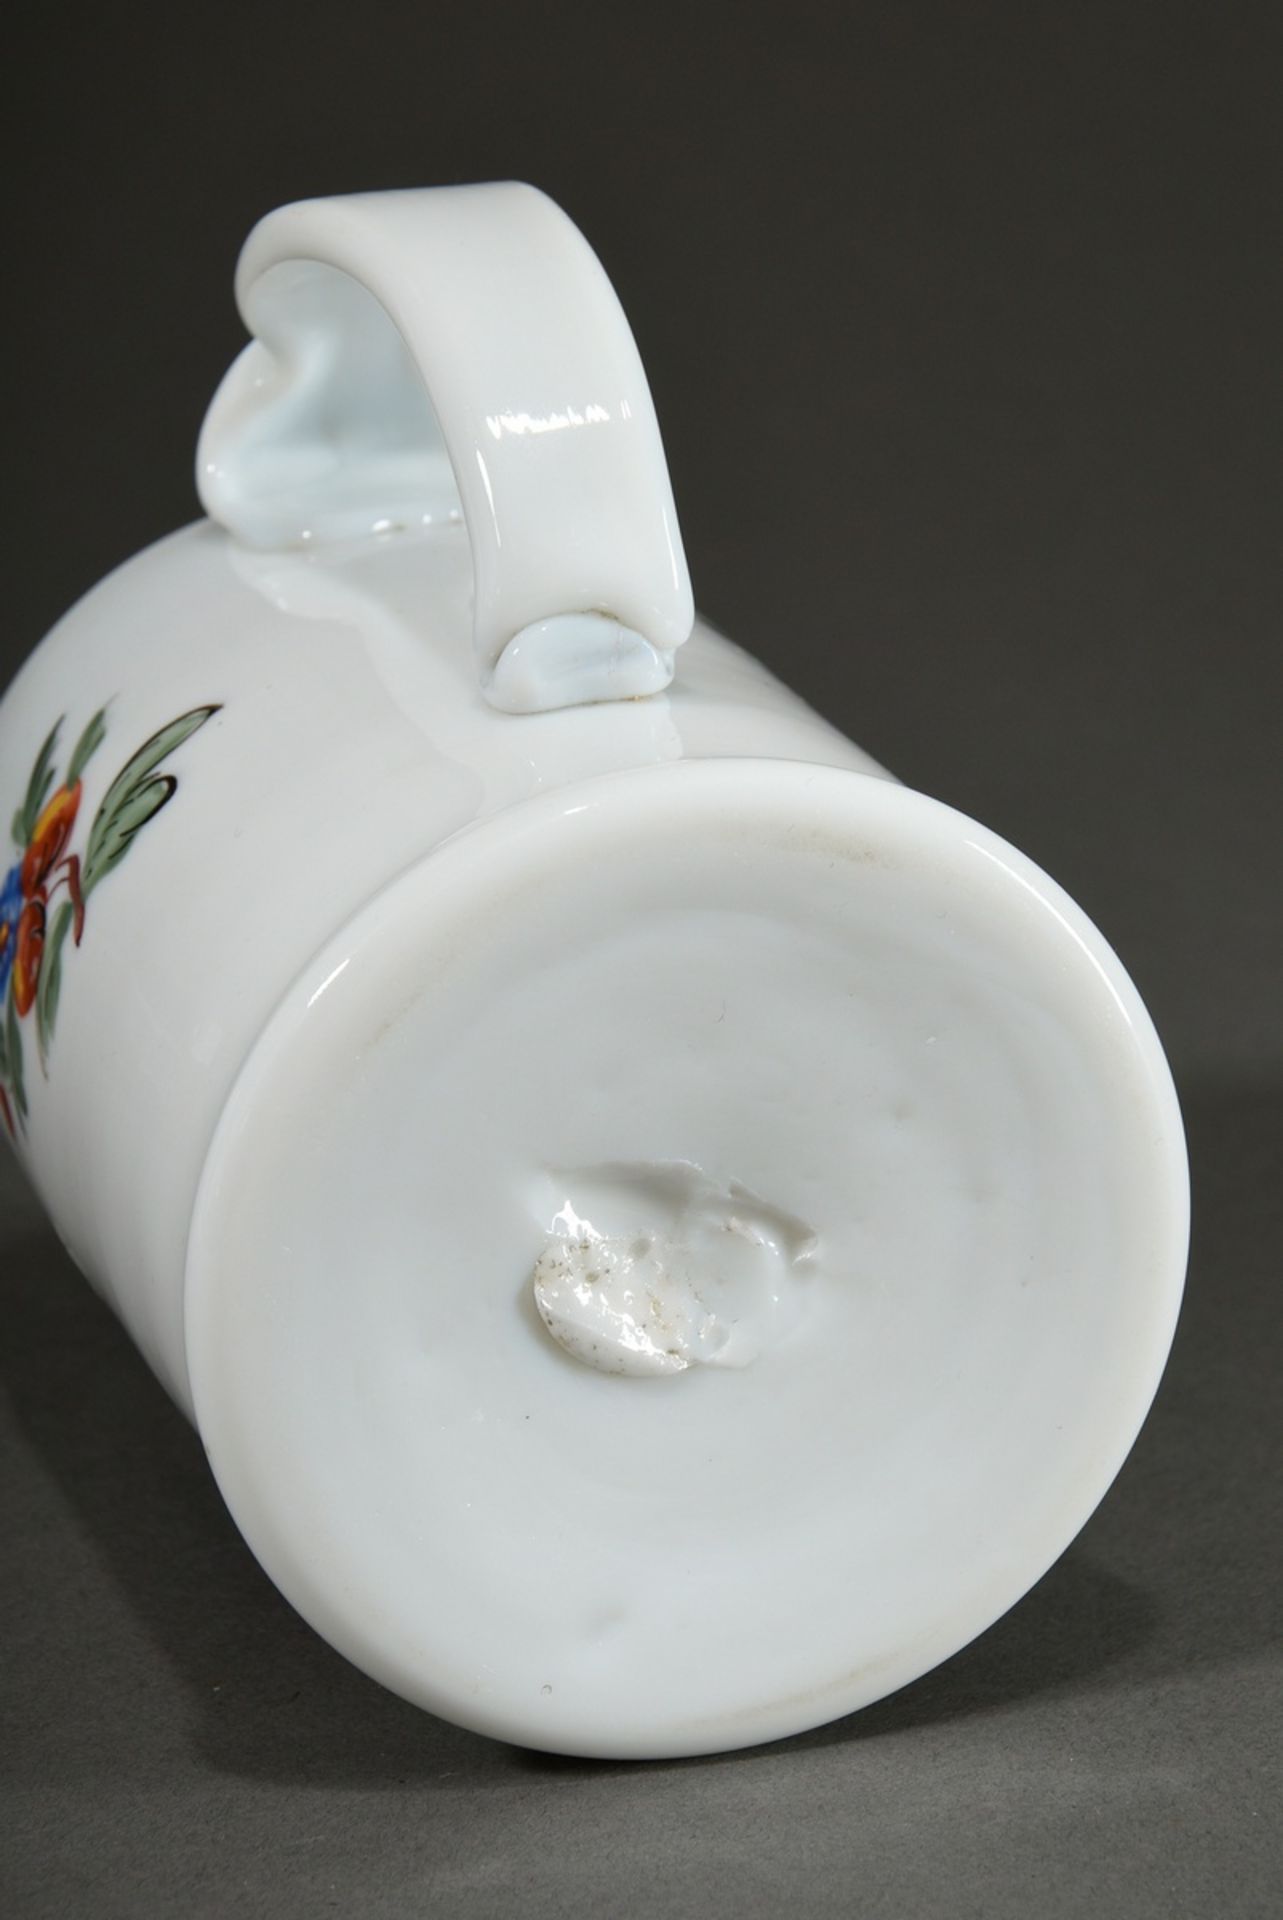 Freimaurer Milchglas Walzenkrug mit farbiger Emaille Malerei in floral verzierter Kartusche, Bandhe - Bild 4 aus 4